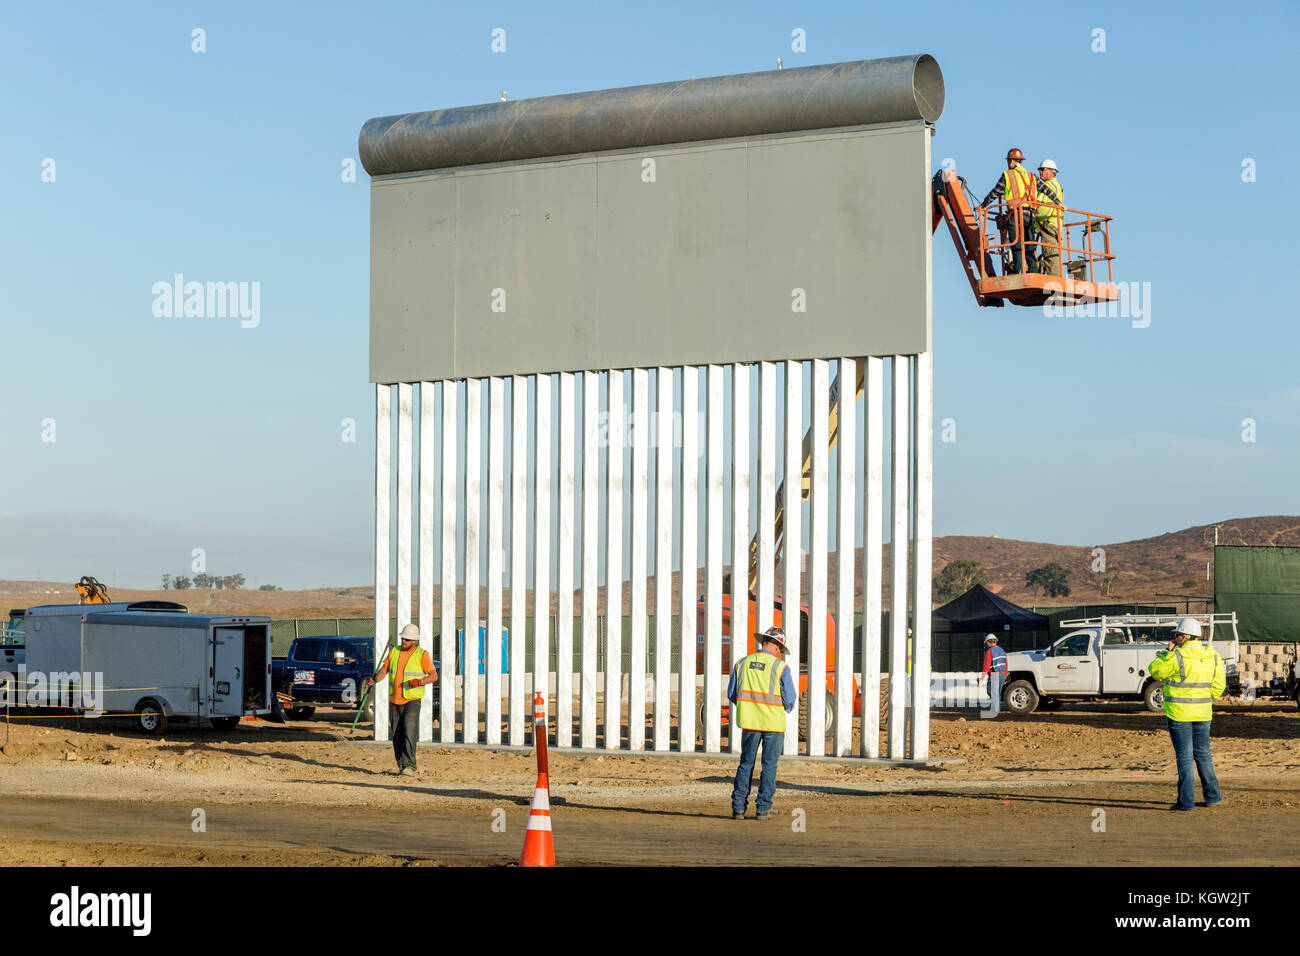 Trump Verwaltung neue US-mexikanischen Grenze Mauer Prototypen werden im Oktober 2017 vorgestellt. Dieser Prototyp wurde entworfen und von kwr Bau, ein Arizona - integrierte Unternehmen und zu testen, um sicherzustellen, dass sie Angriff widerstehen kann ausgesetzt werden und versucht, über, unter und über sie zu gehen. Weitere Informationen finden Sie unten. Stockfoto